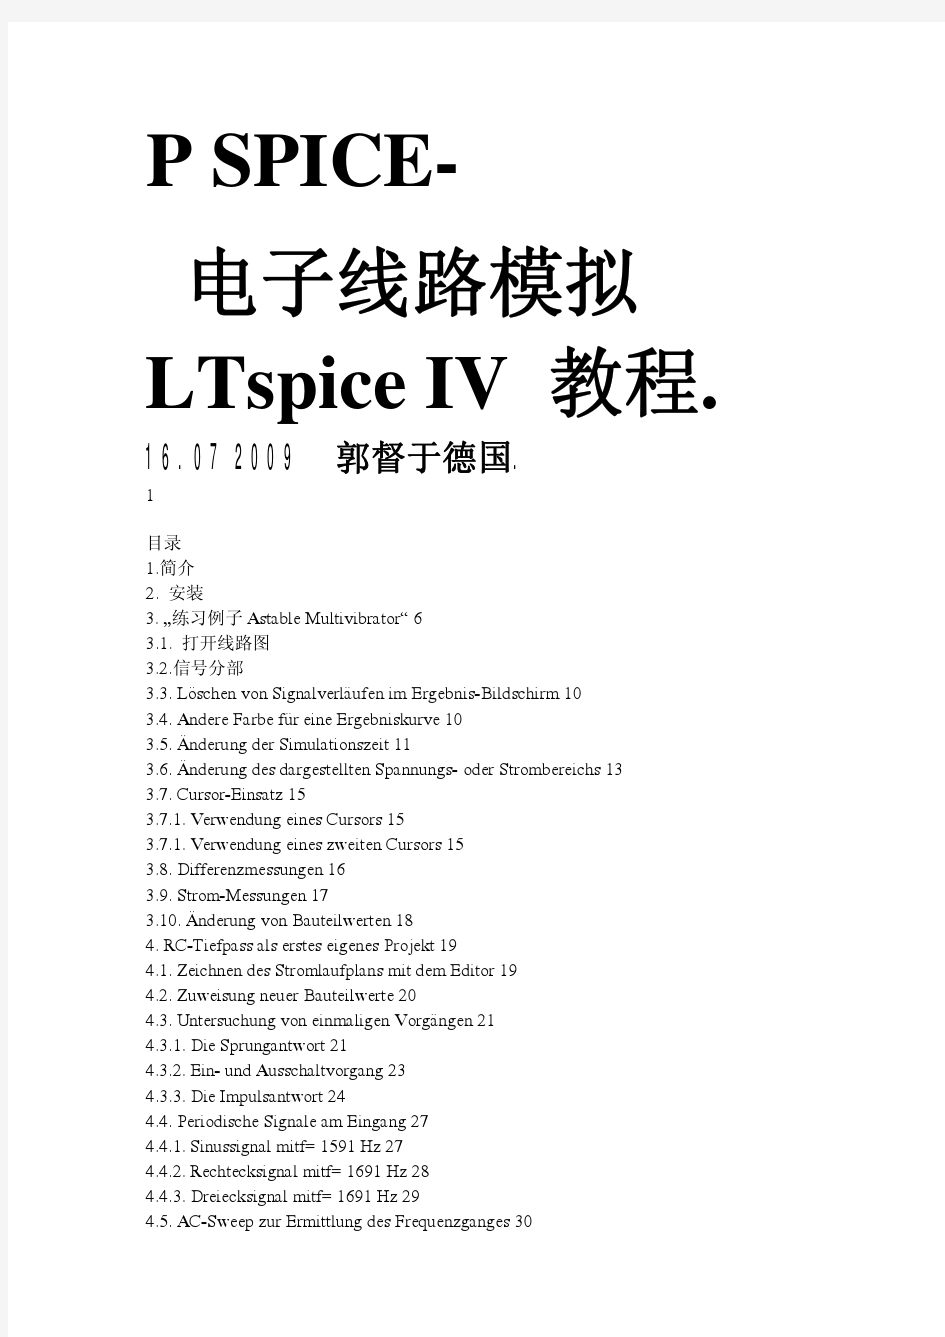 LTspice_IV中文说明2009